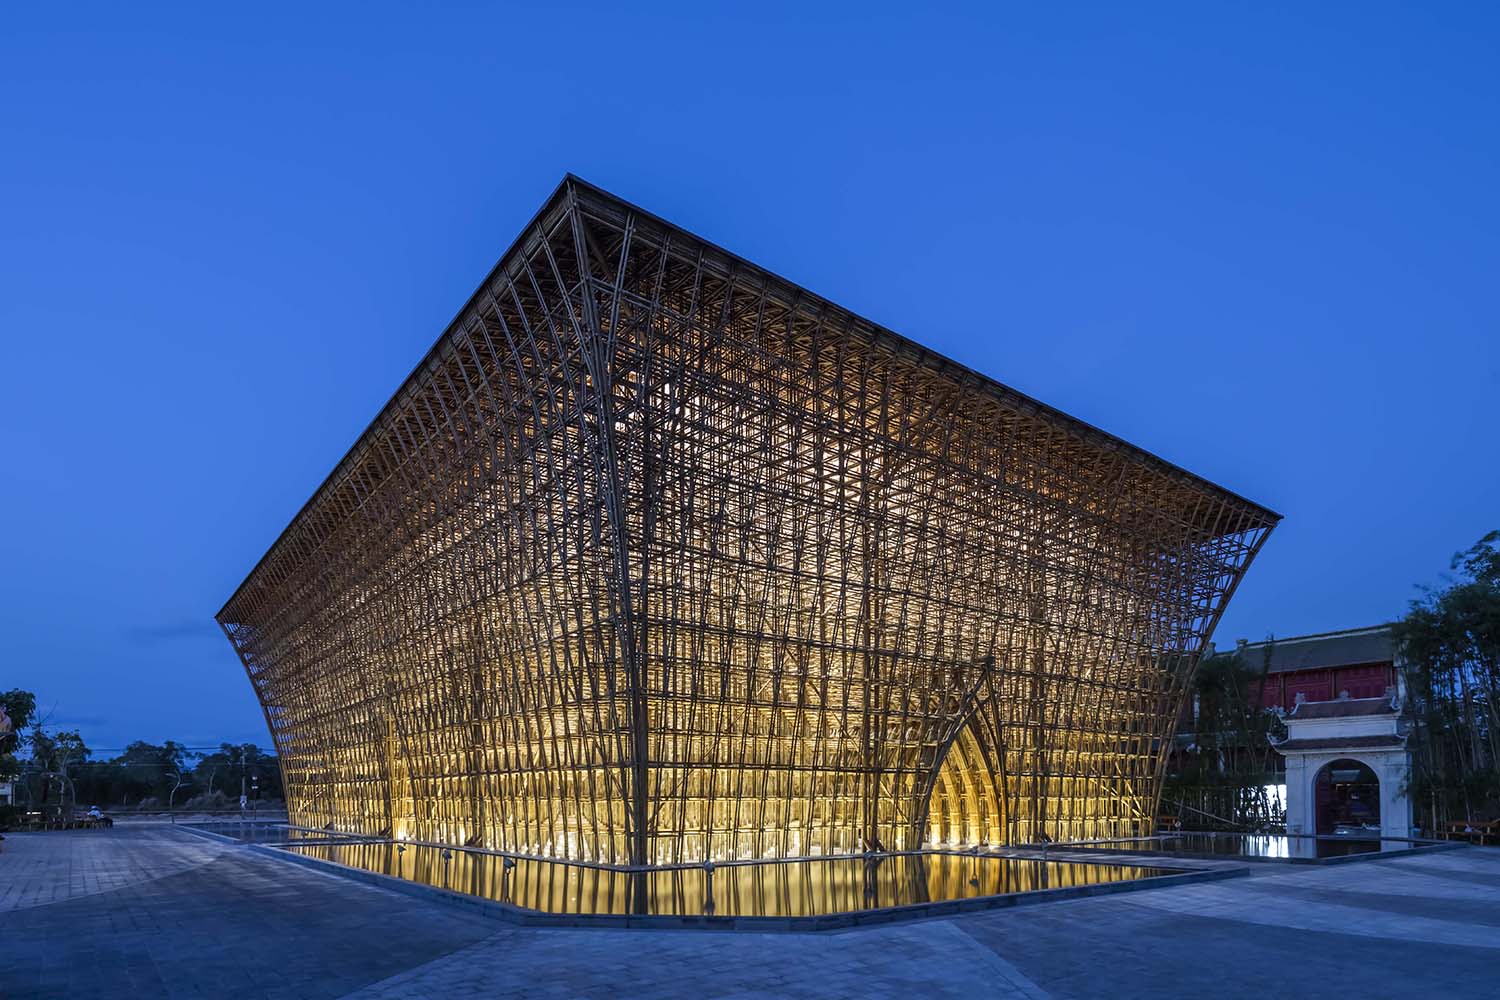 Уникальный бамбуковый павильон Vinpearl Phu Quoc - архитектура, олицетворяющая вьетнамскую культуру